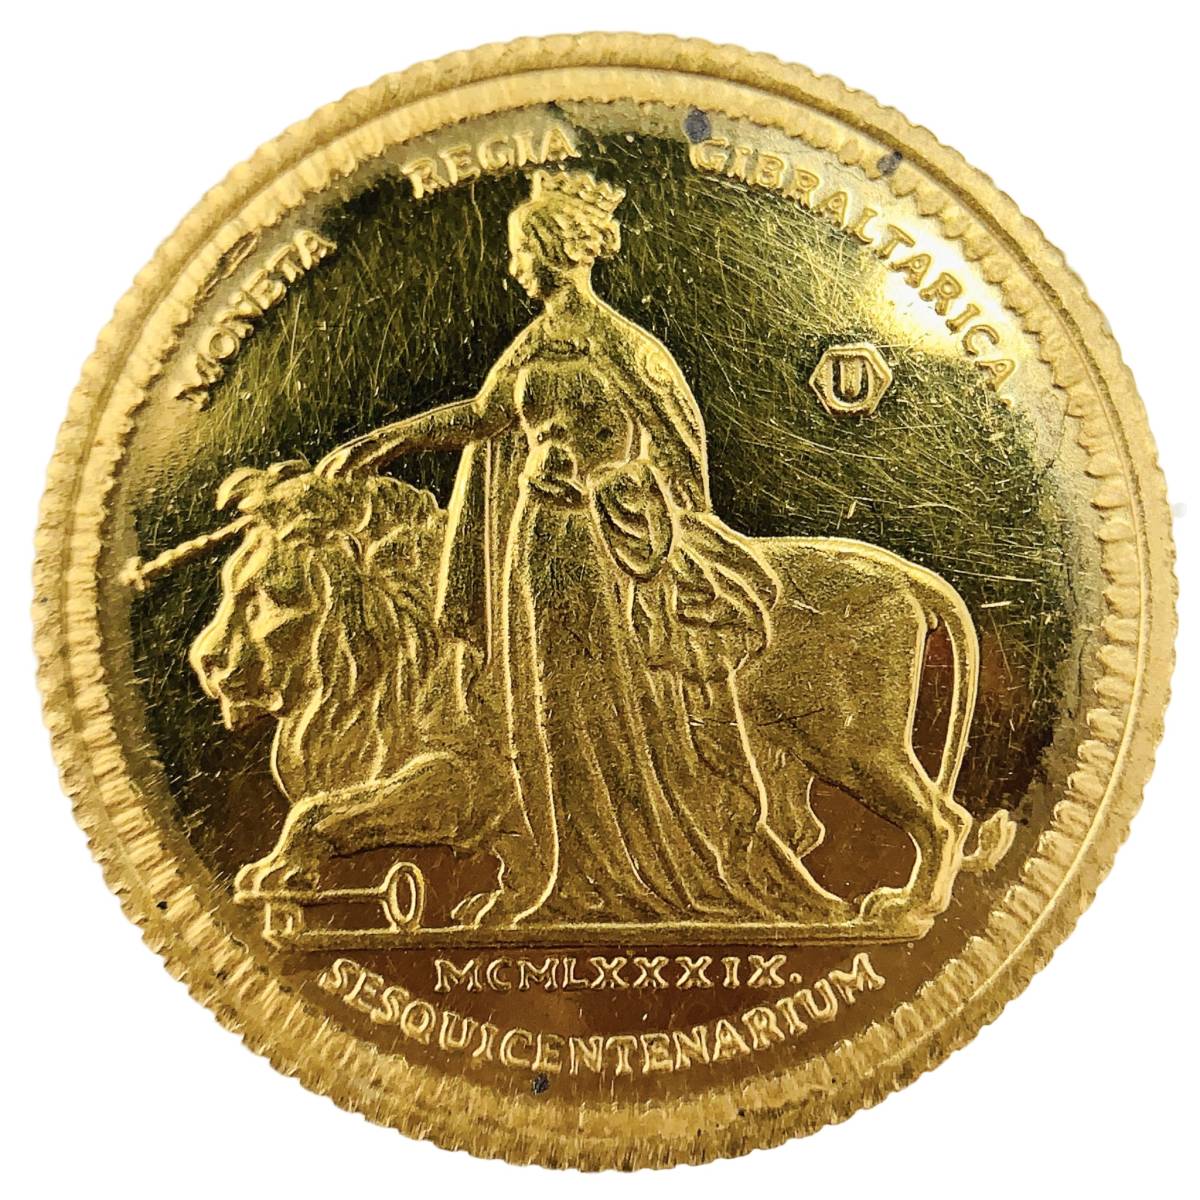  ウナとライオン金貨 ジブラルタル イエローゴールド 22金 1989年 4g コレクション アンティークコイン_画像1